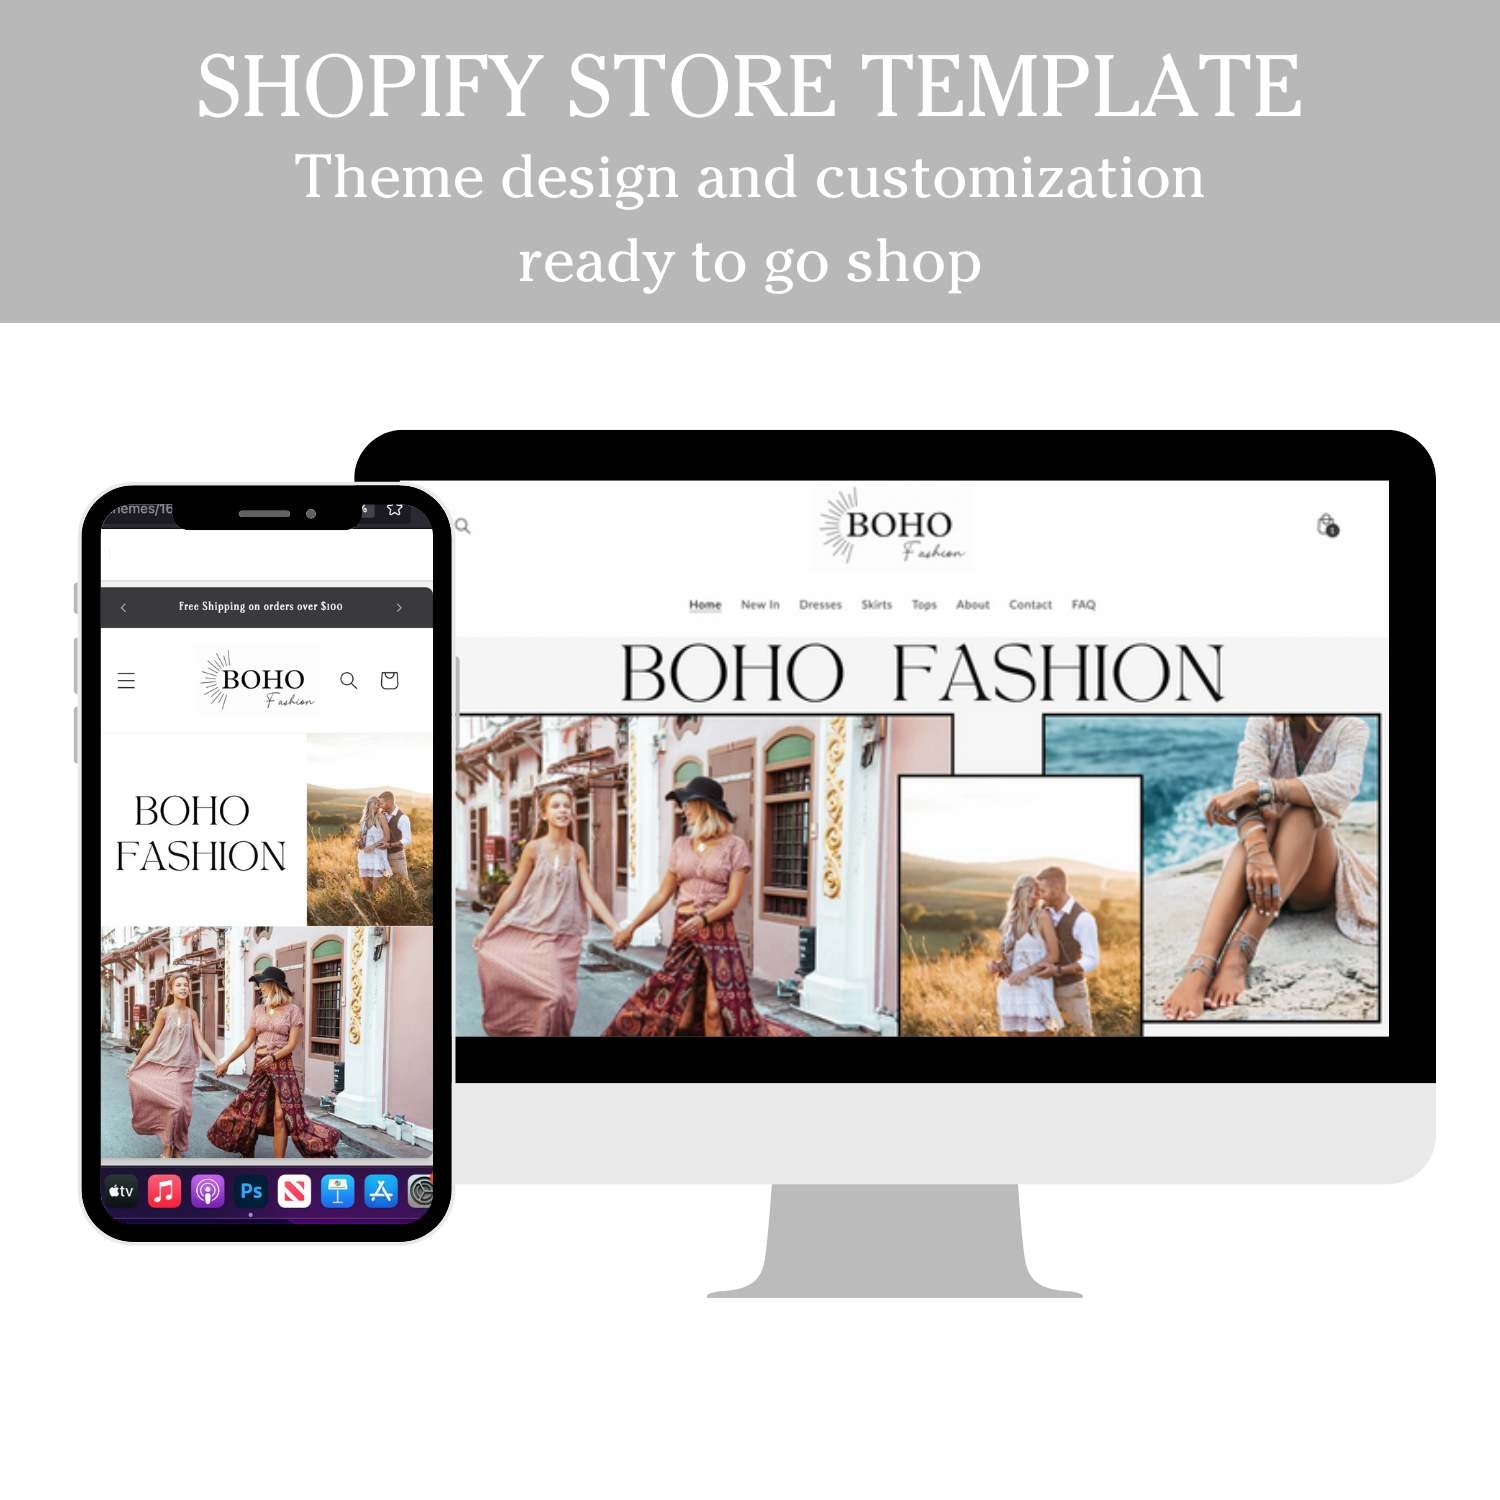 Boho fashion shopify theme template